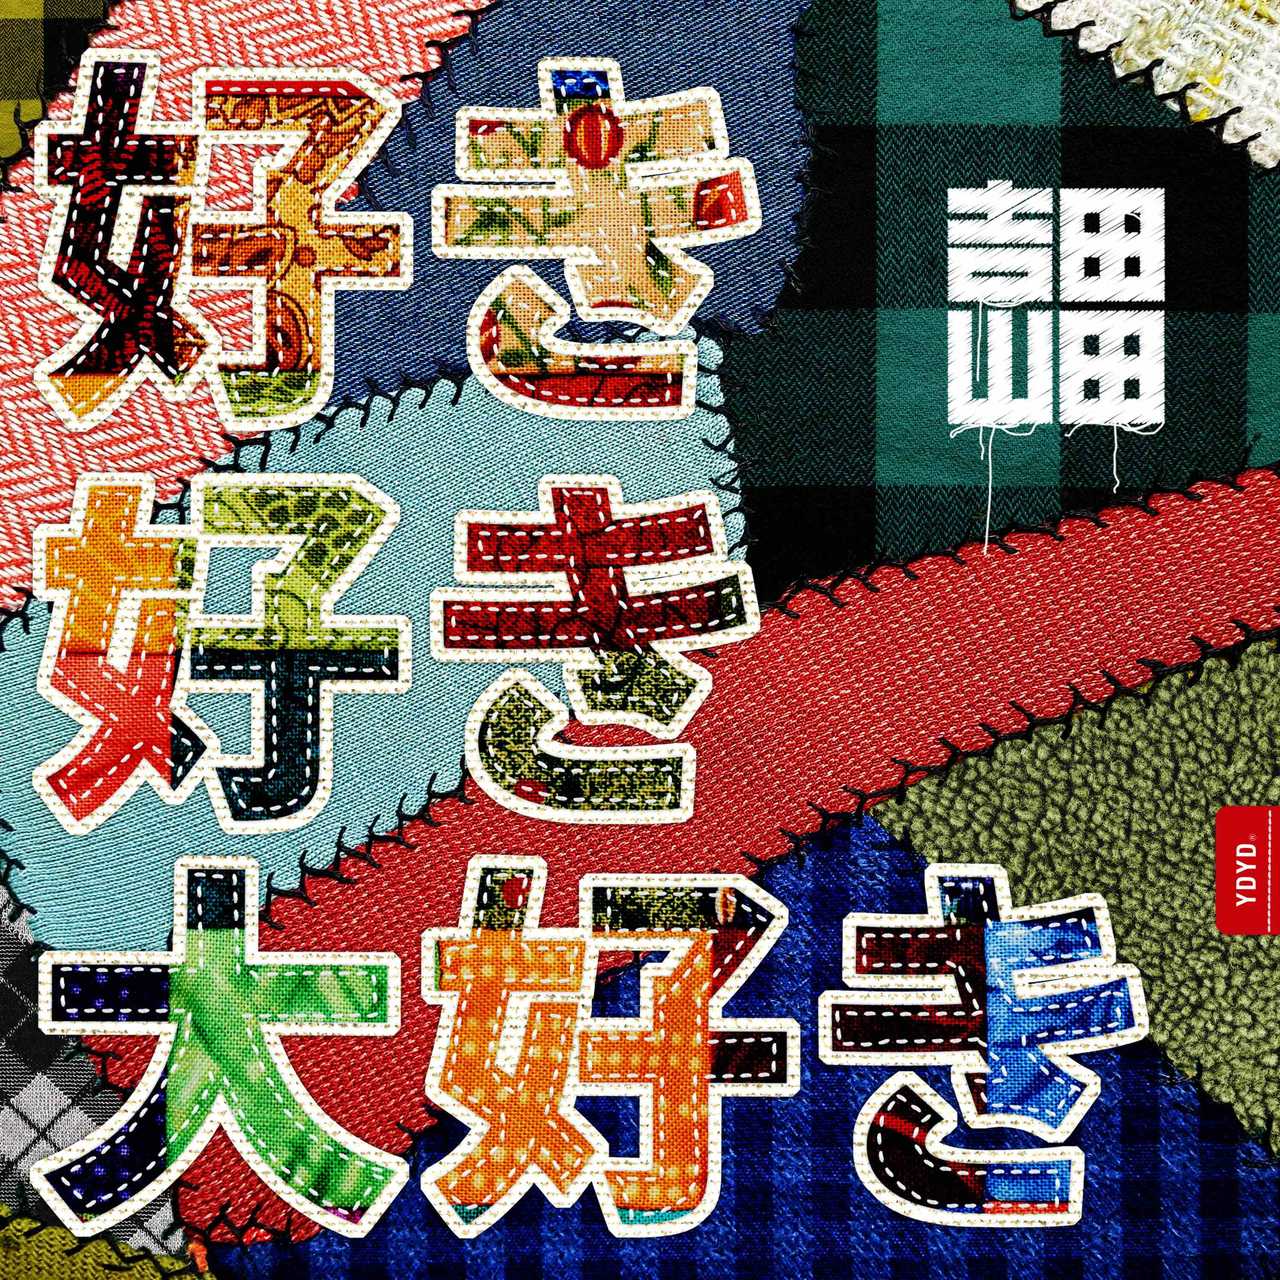 吉田山田、新曲「好き好き大好き」が西松屋のトレーナーCMソングに決定